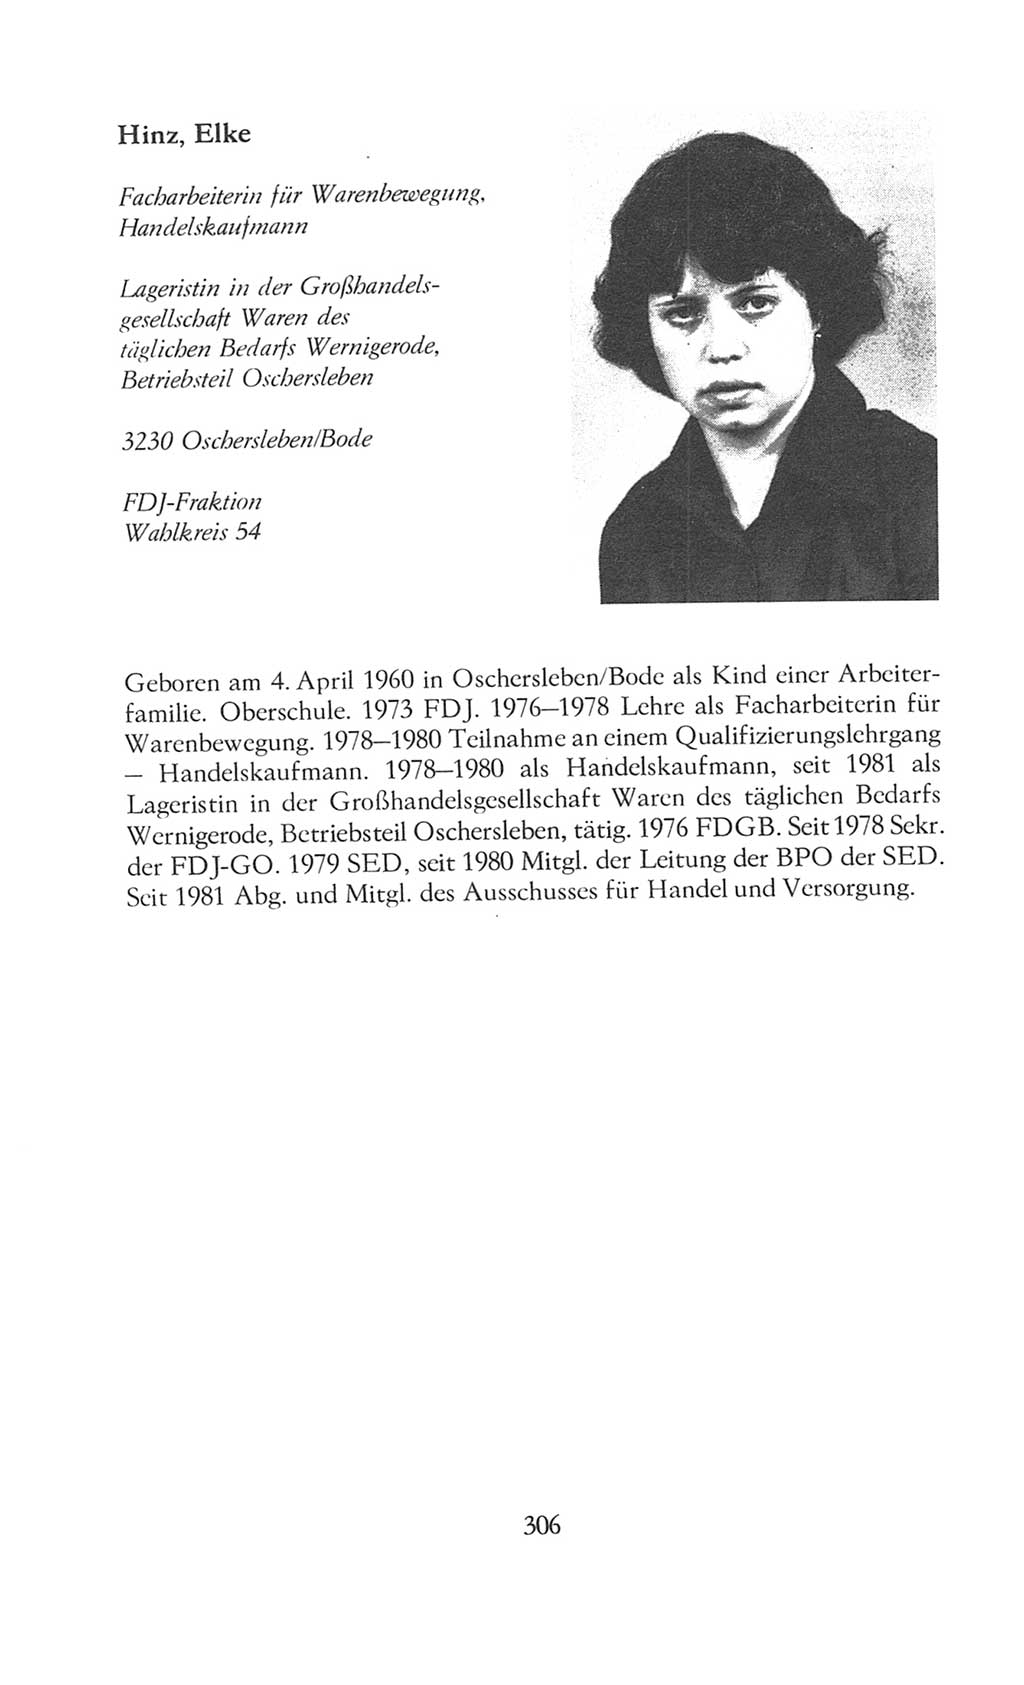 Volkskammer (VK) der Deutschen Demokratischen Republik (DDR), 8. Wahlperiode 1981-1986, Seite 306 (VK. DDR 8. WP. 1981-1986, S. 306)